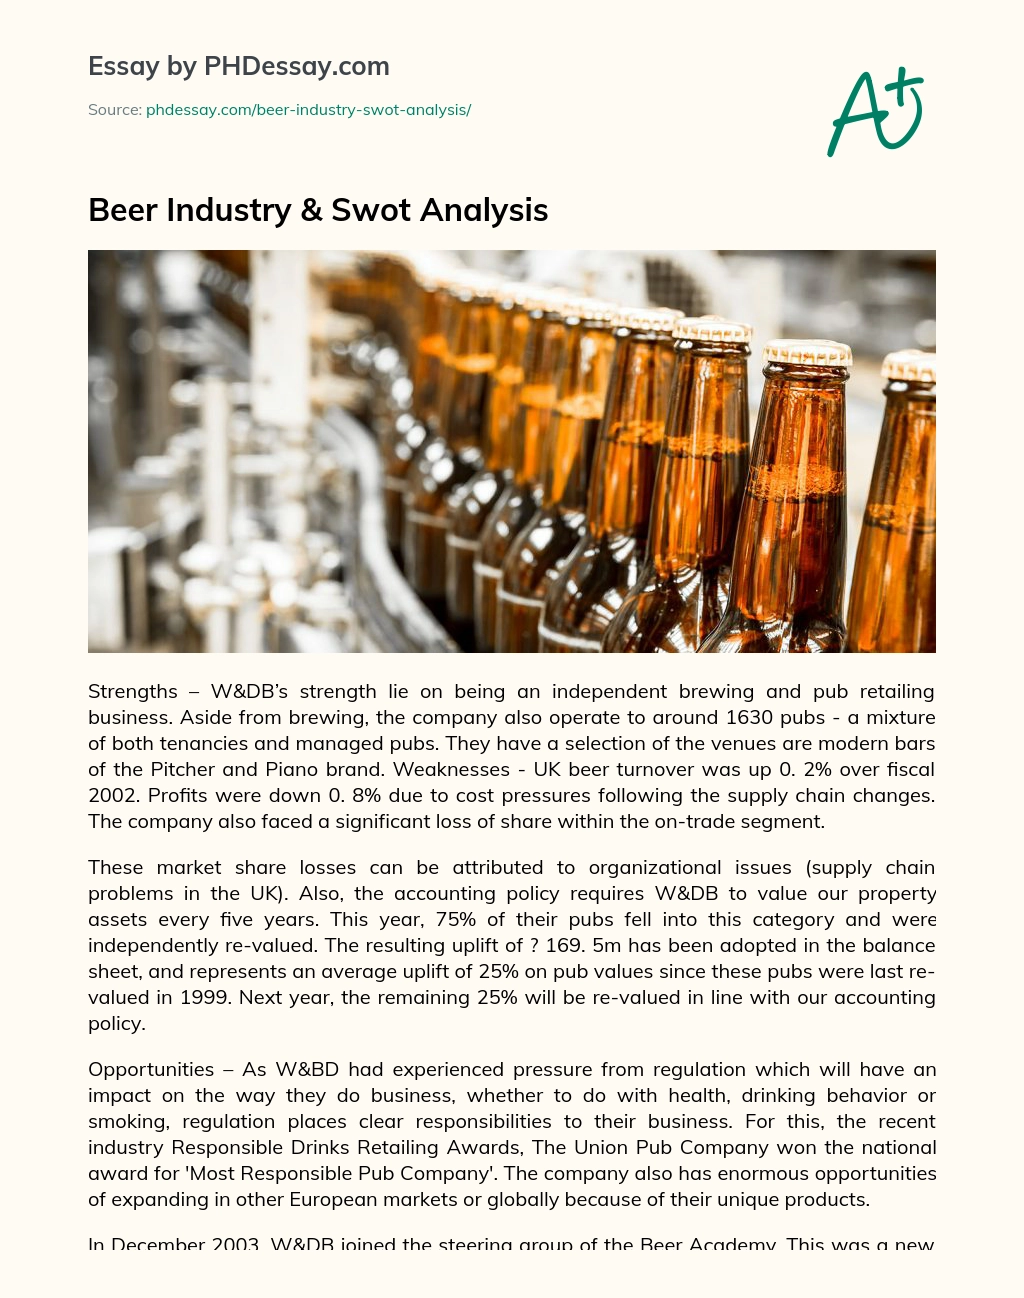 Beer Industry & Swot Analysis essay